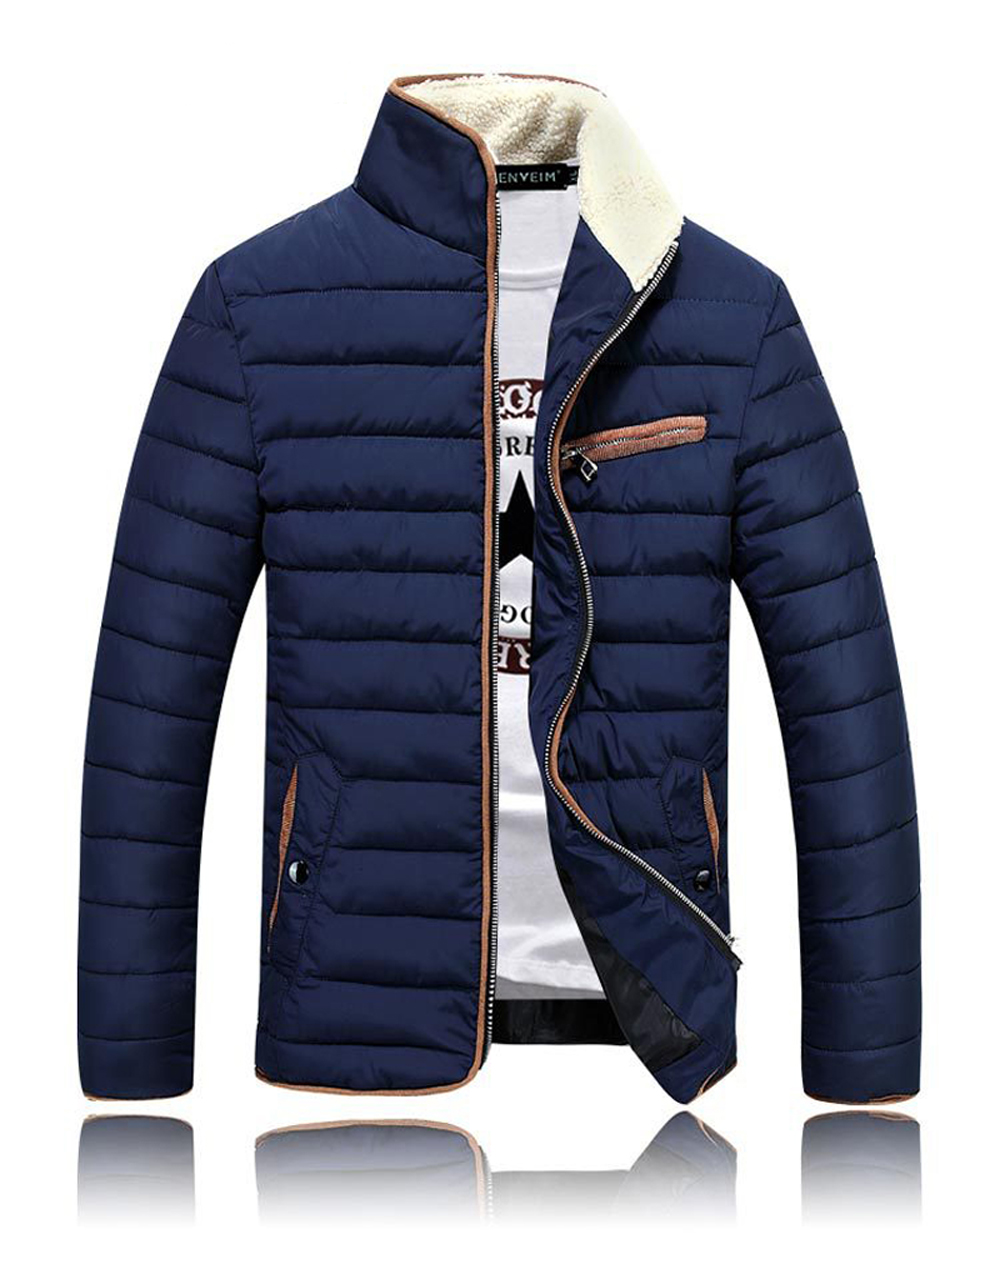 2015 Casual Men Clothes Winter Jackets and Coats Outdoor Fur Collar Ceket Abrigos y Chaquetas Veste